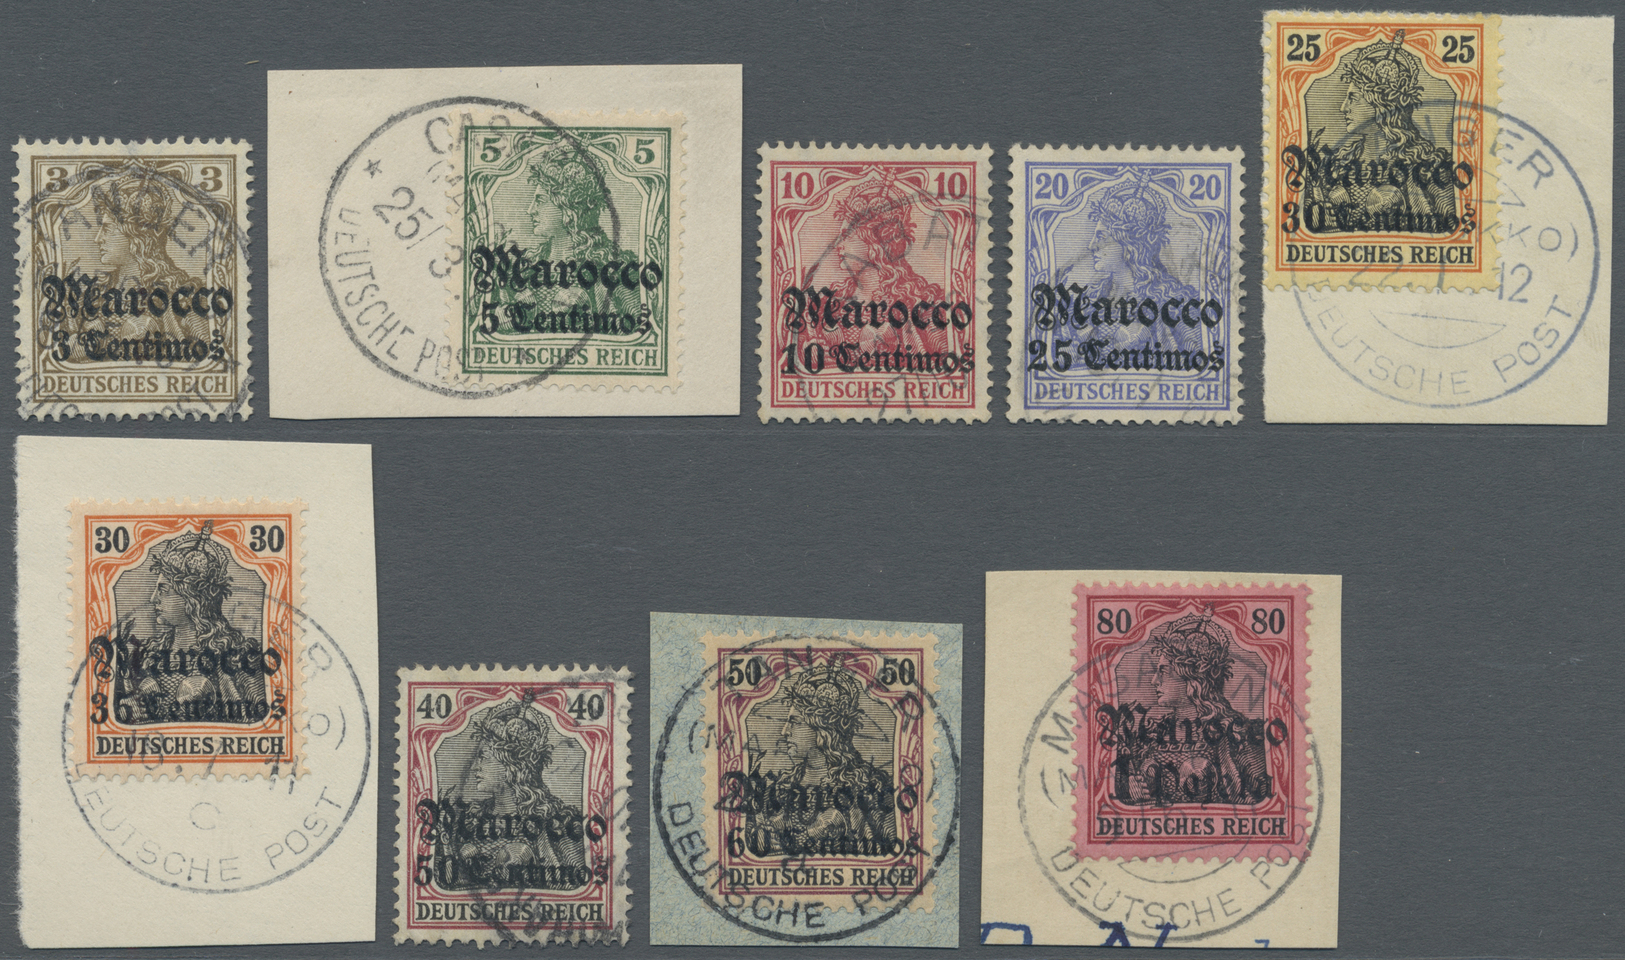 O/Brfst Deutsche Post In Marokko: 1906, Freimarken Germania Mit Wasserzeichen Und Überdruck "Marocco" Sauber - Marokko (kantoren)